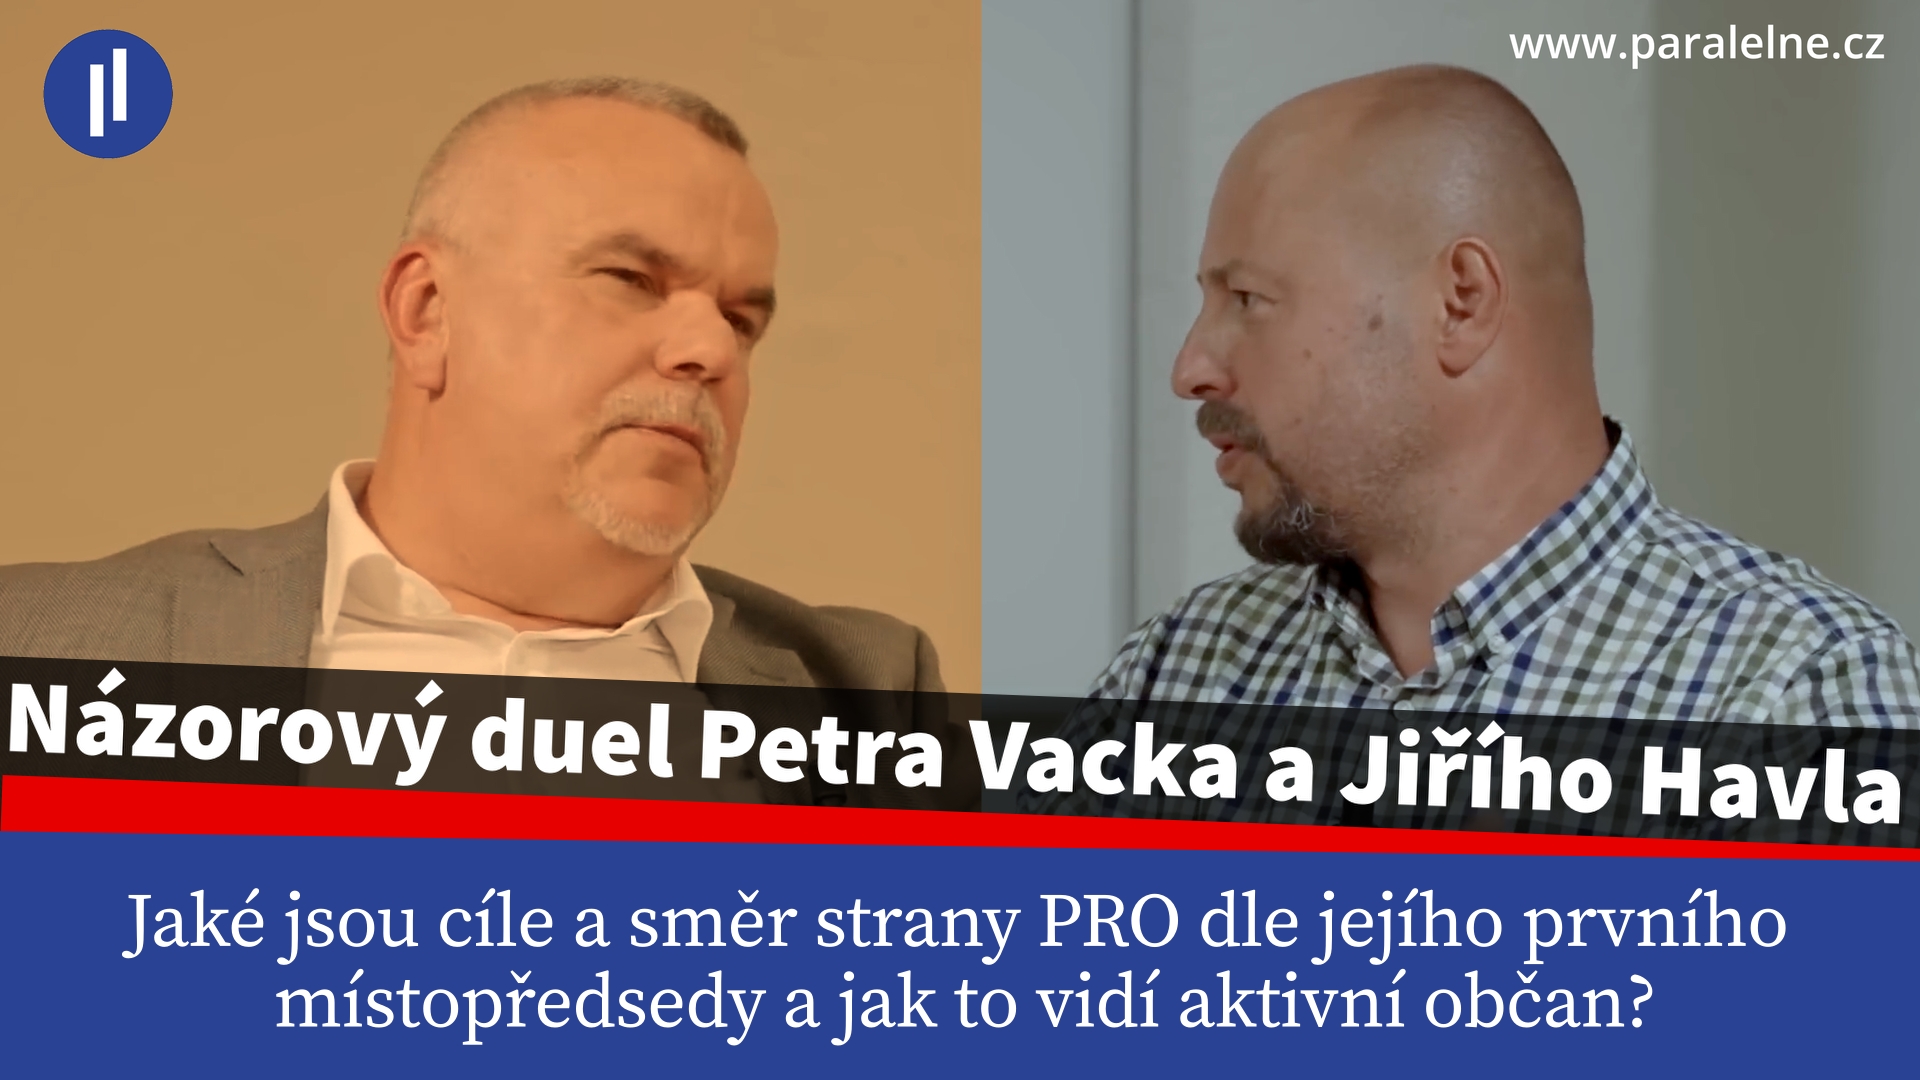 Rozhovor Petra Vacka a Jiřího Havla – pohled prvního místopředsedy PRO a pohled občana se selským rozumem. Kam směřuje PRO?